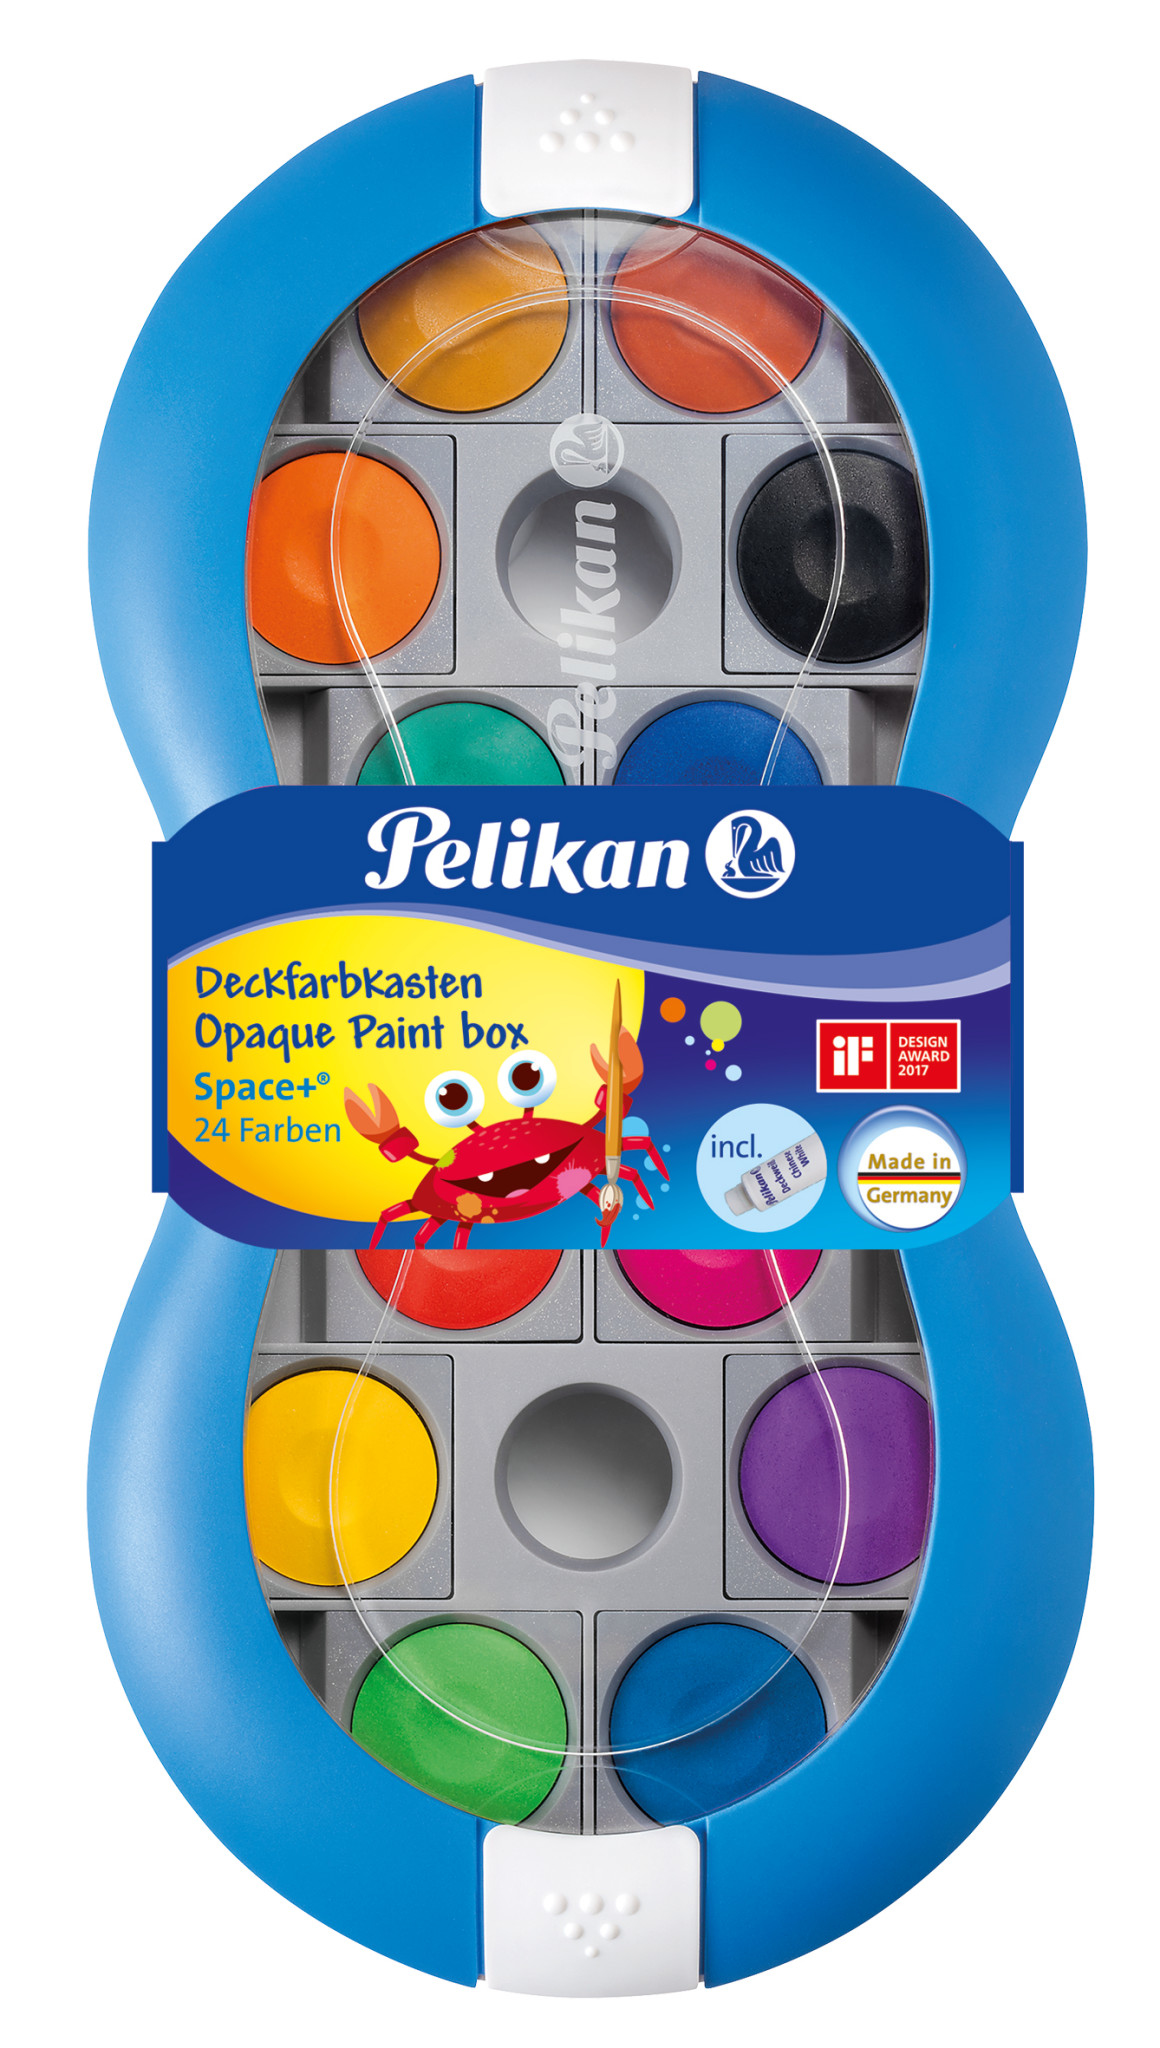 Pelikan | Deckfarbkasten Space+ 735 SP/24 blau in FS-Banderole